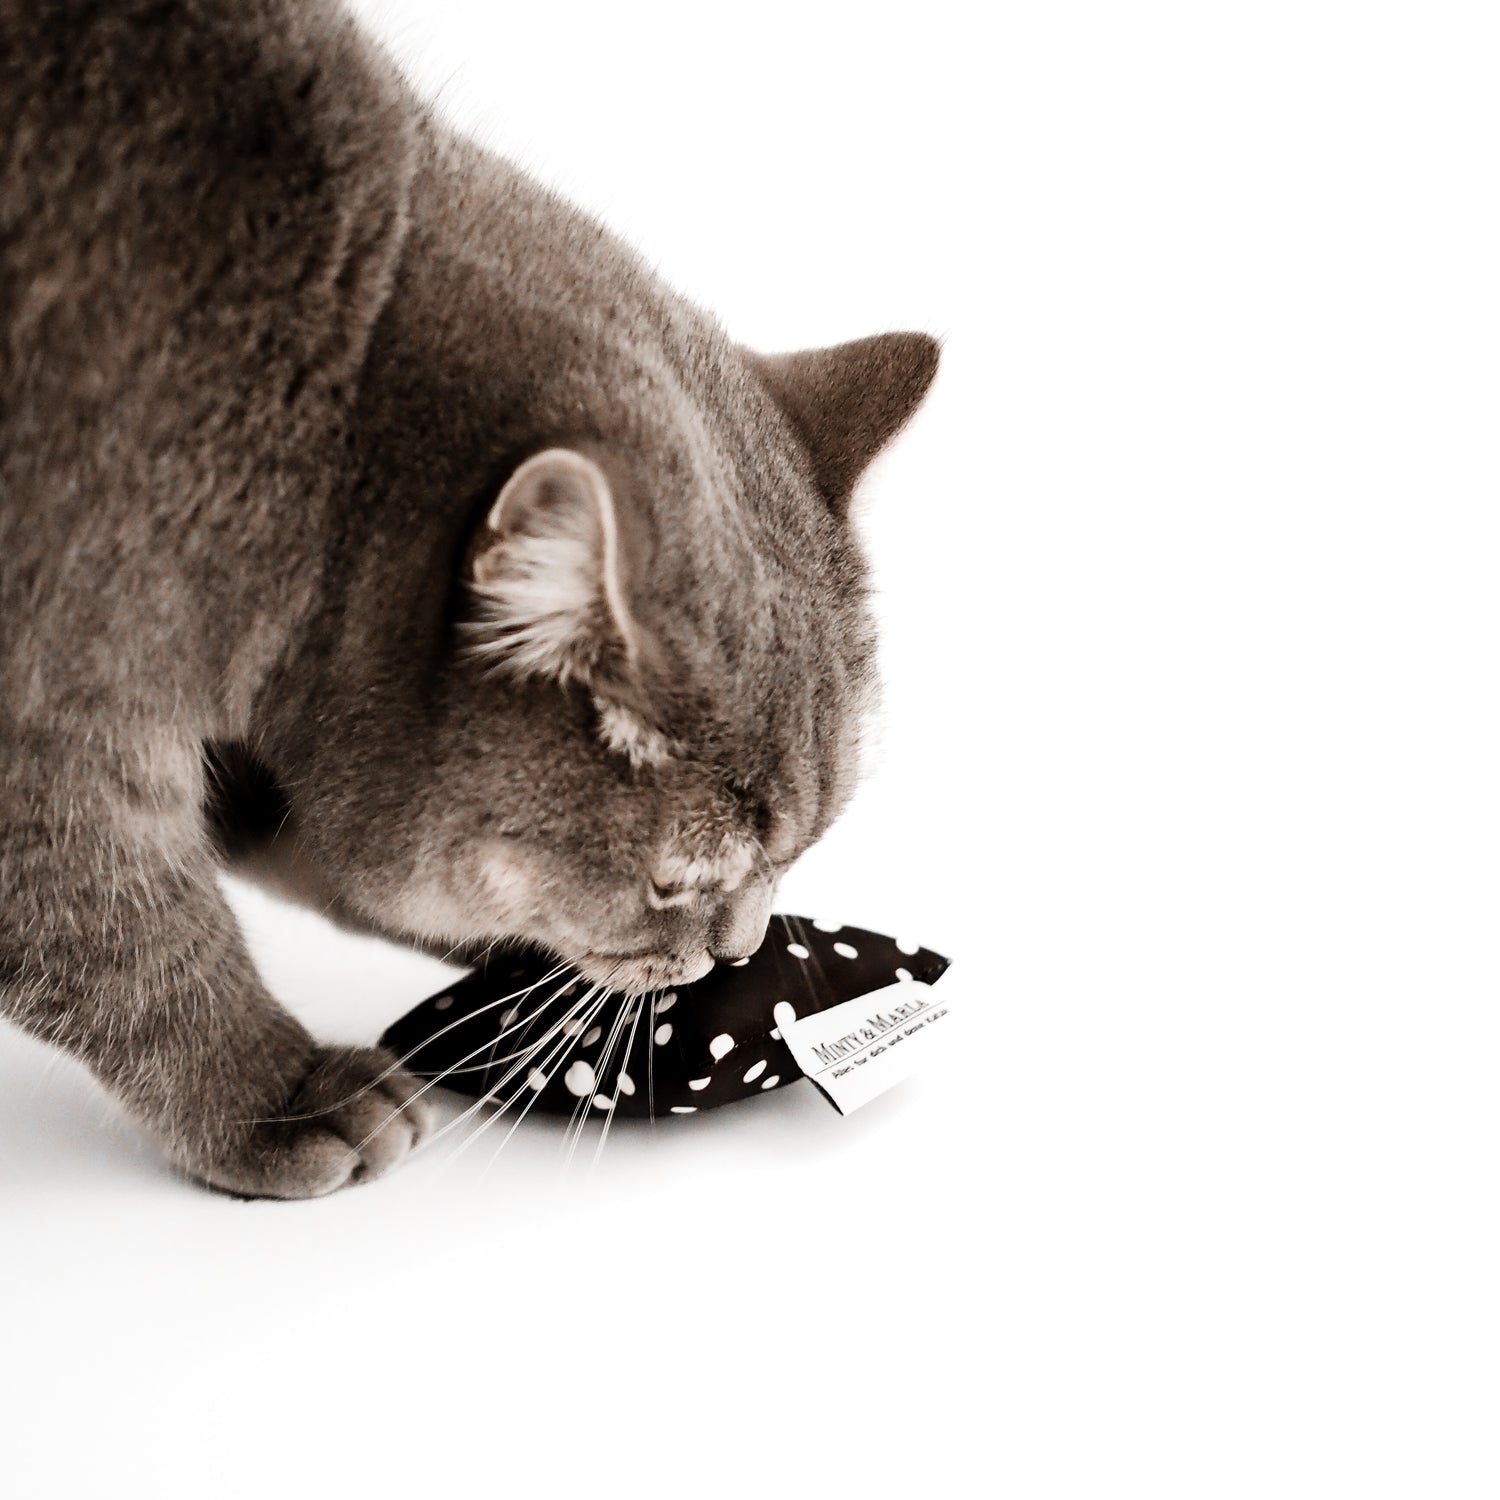 Katze leckt an schwarzem Spielkissen gefüllt mit Katzenminze.